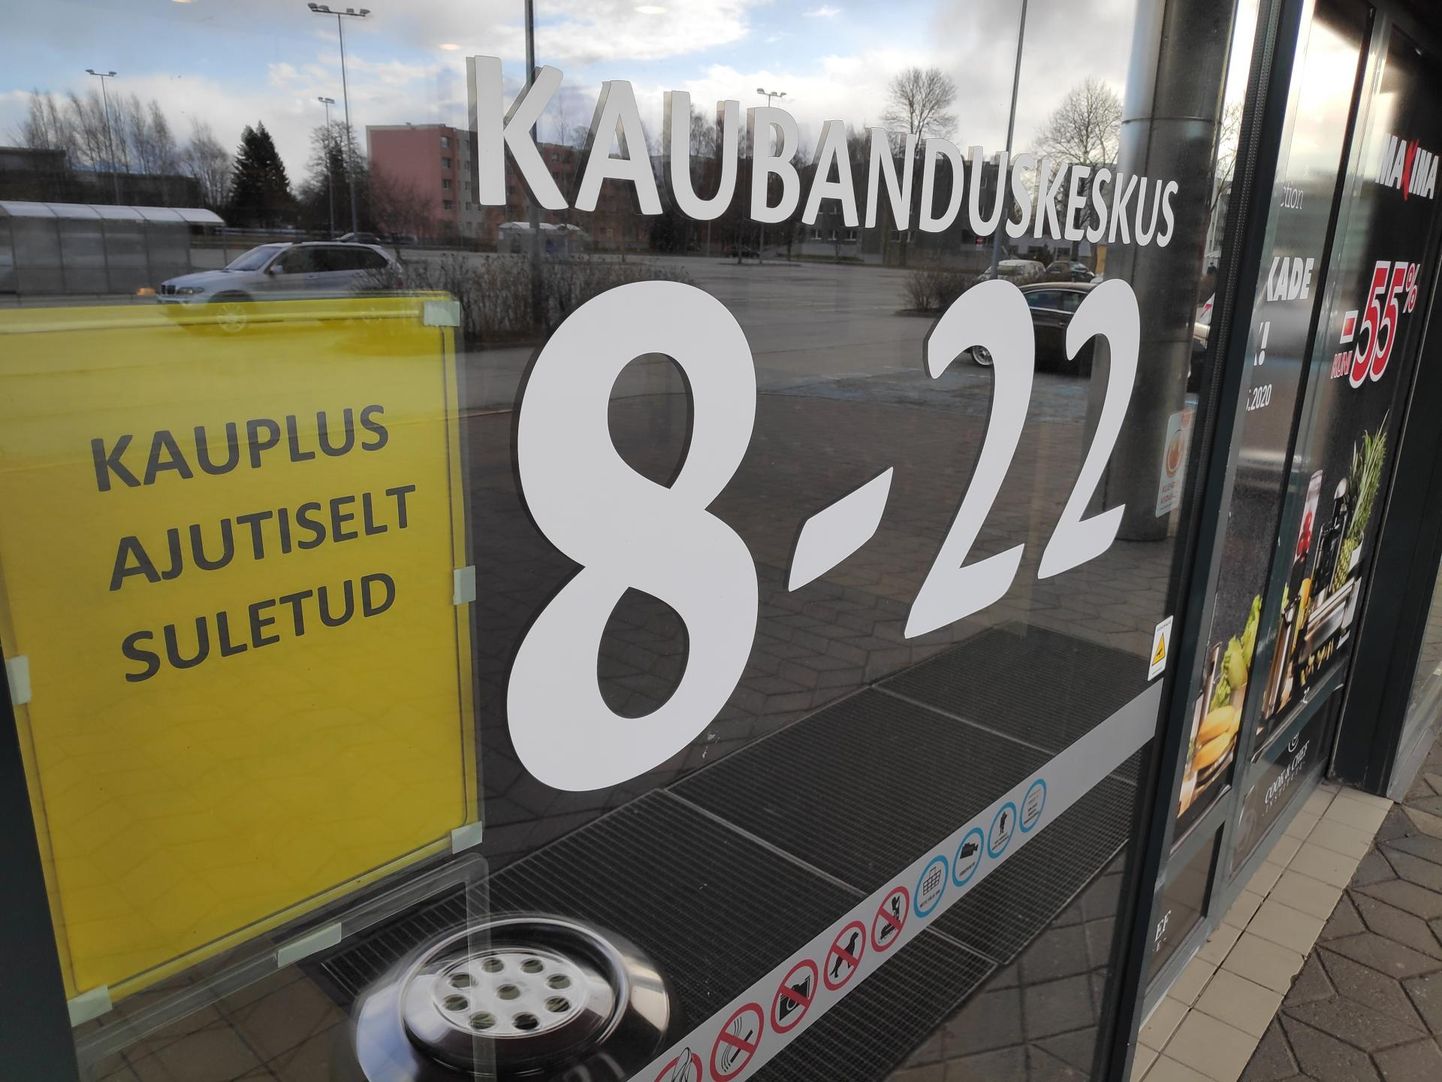 Maxima Eesti OÜ, якорный арендатор закрытого торгового центра, сообщила, что в магазине проводится дезинфекция.